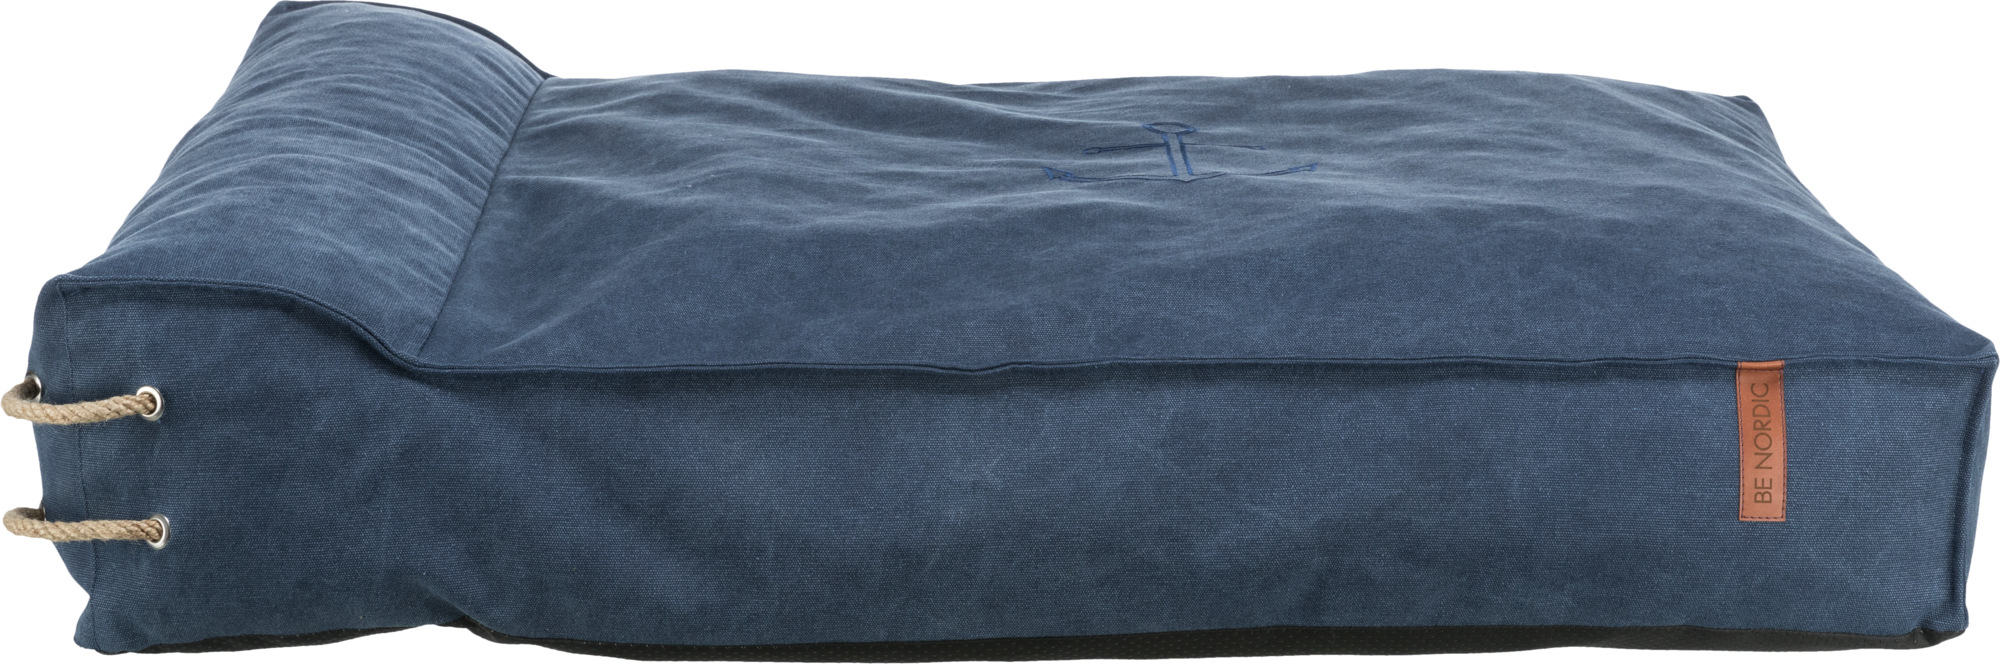 Trixie BE NORDIC Föhr Matratze mit Rand dunkelblau - mehrere Größen erhältlich